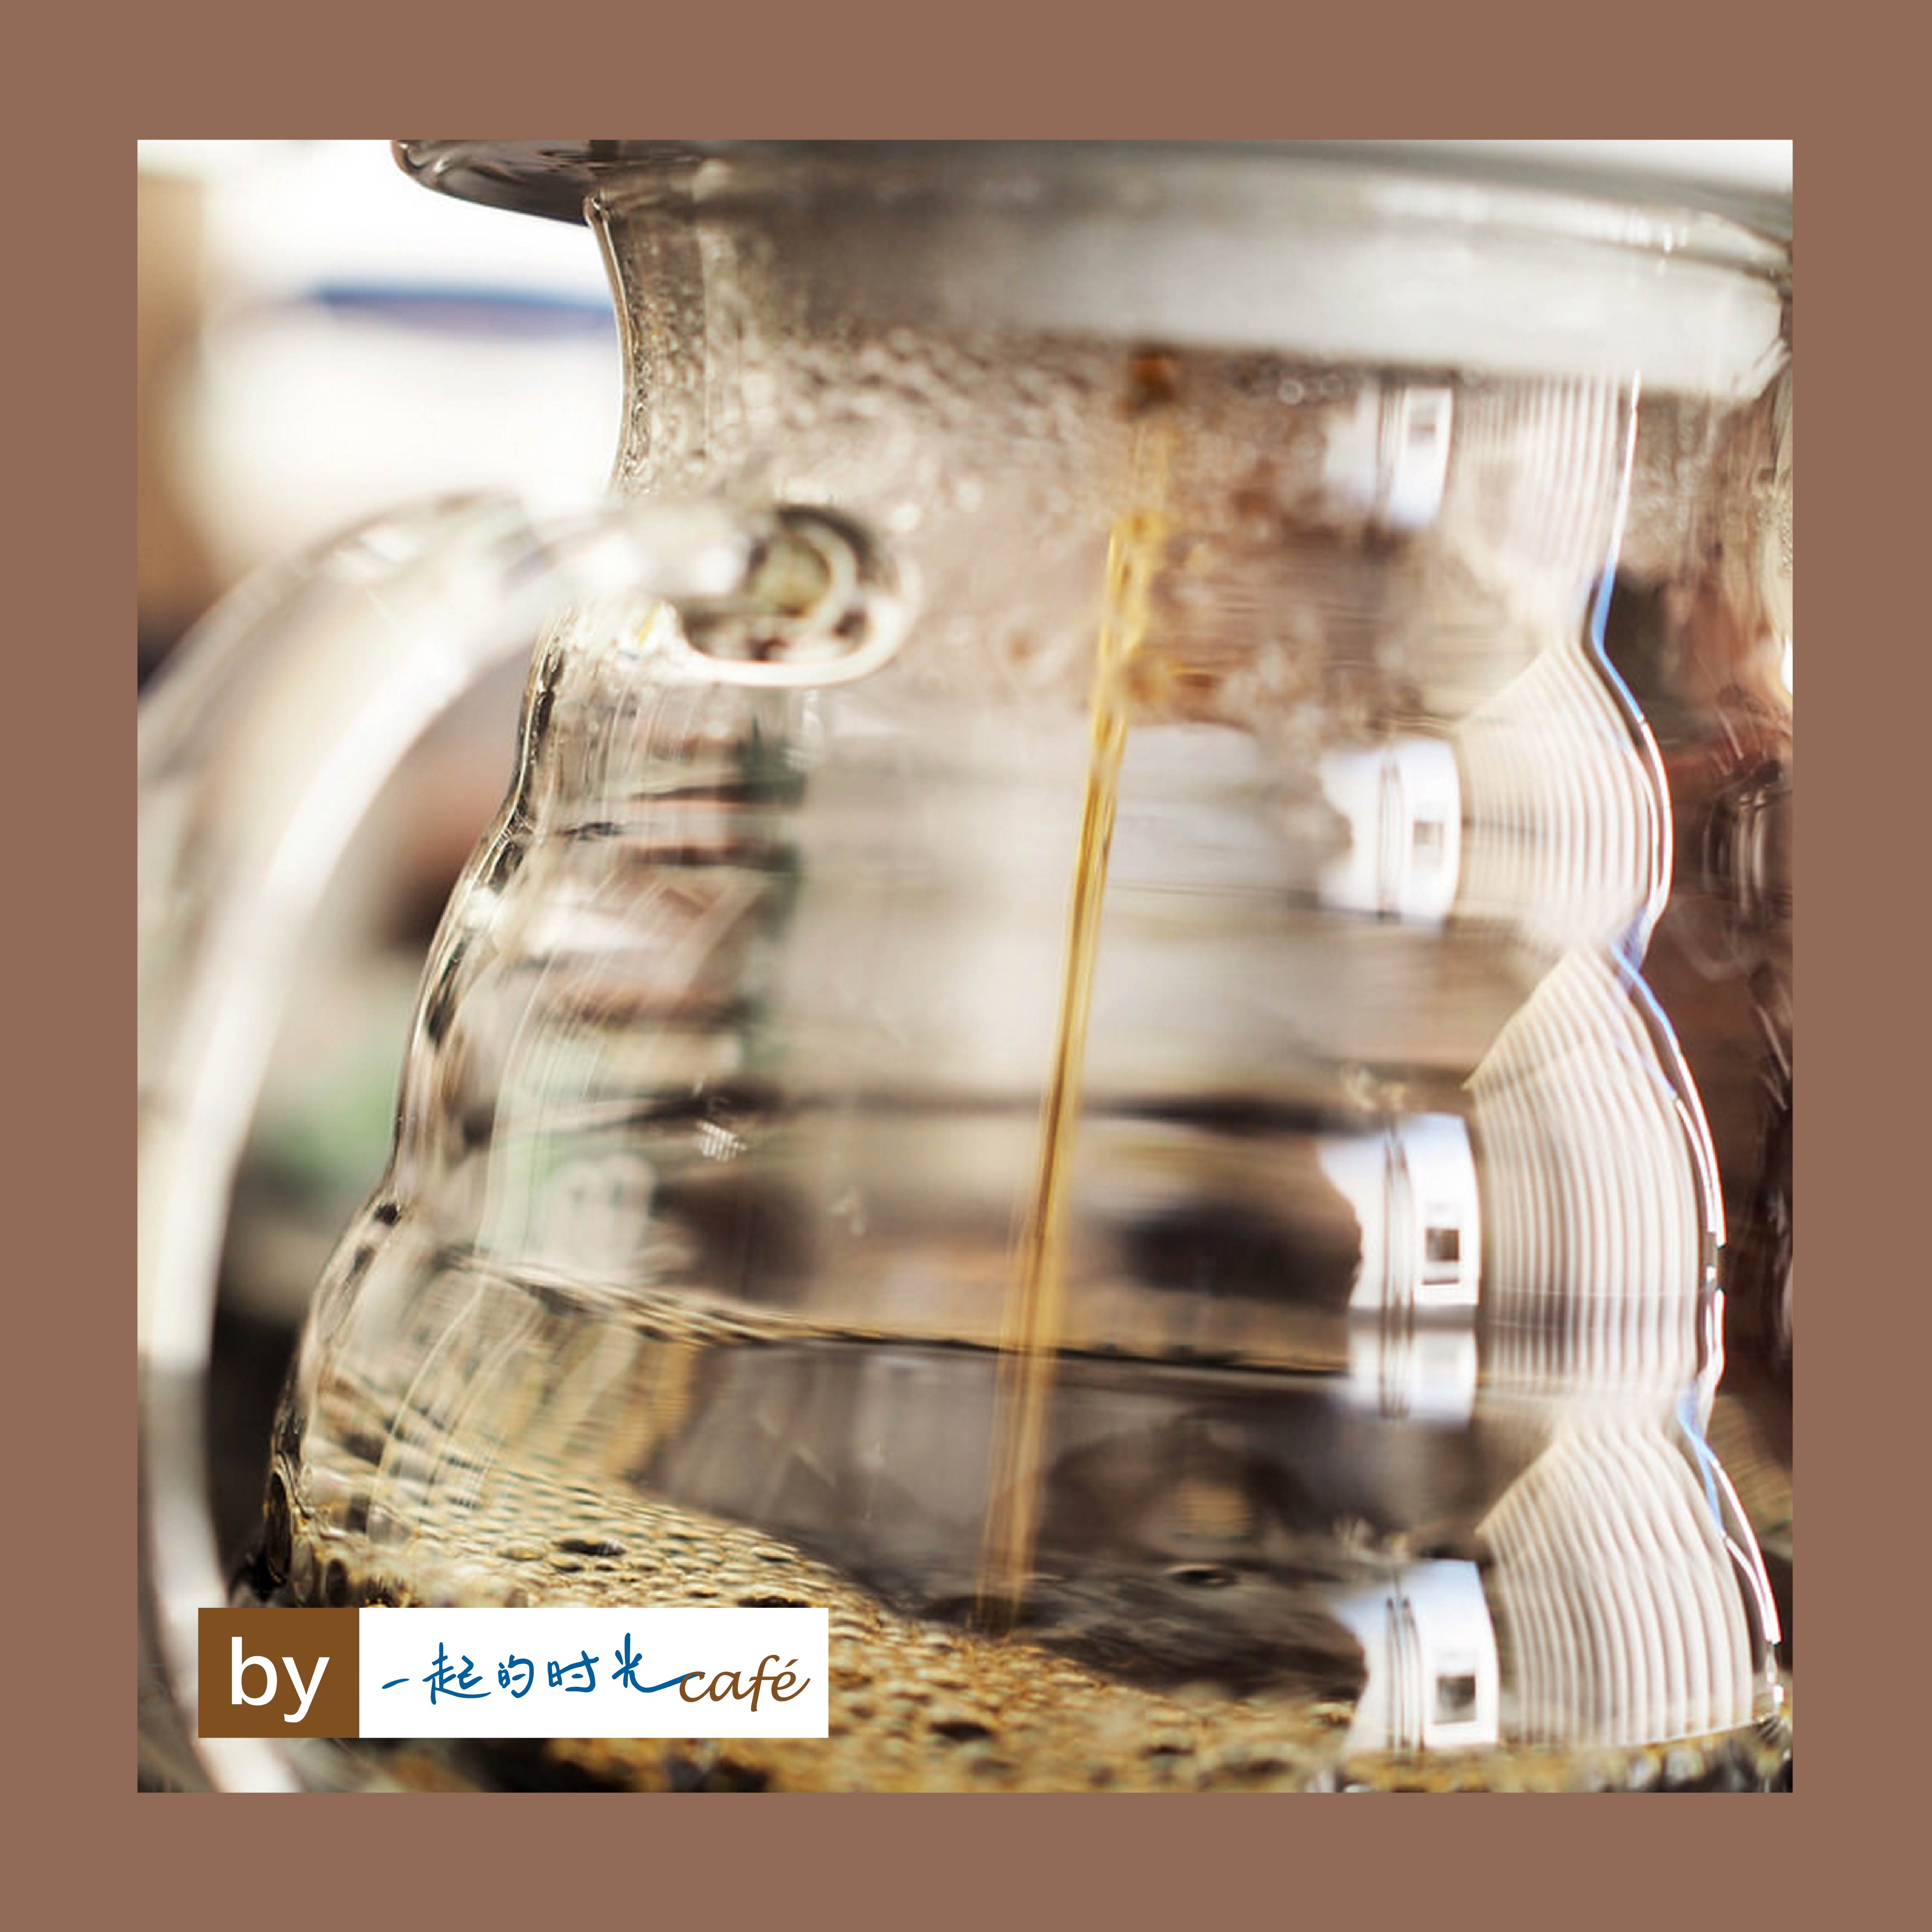 咖啡衝煮器具介紹;Stumptown Coffee美國樹墩城咖啡店專用咖啡壺